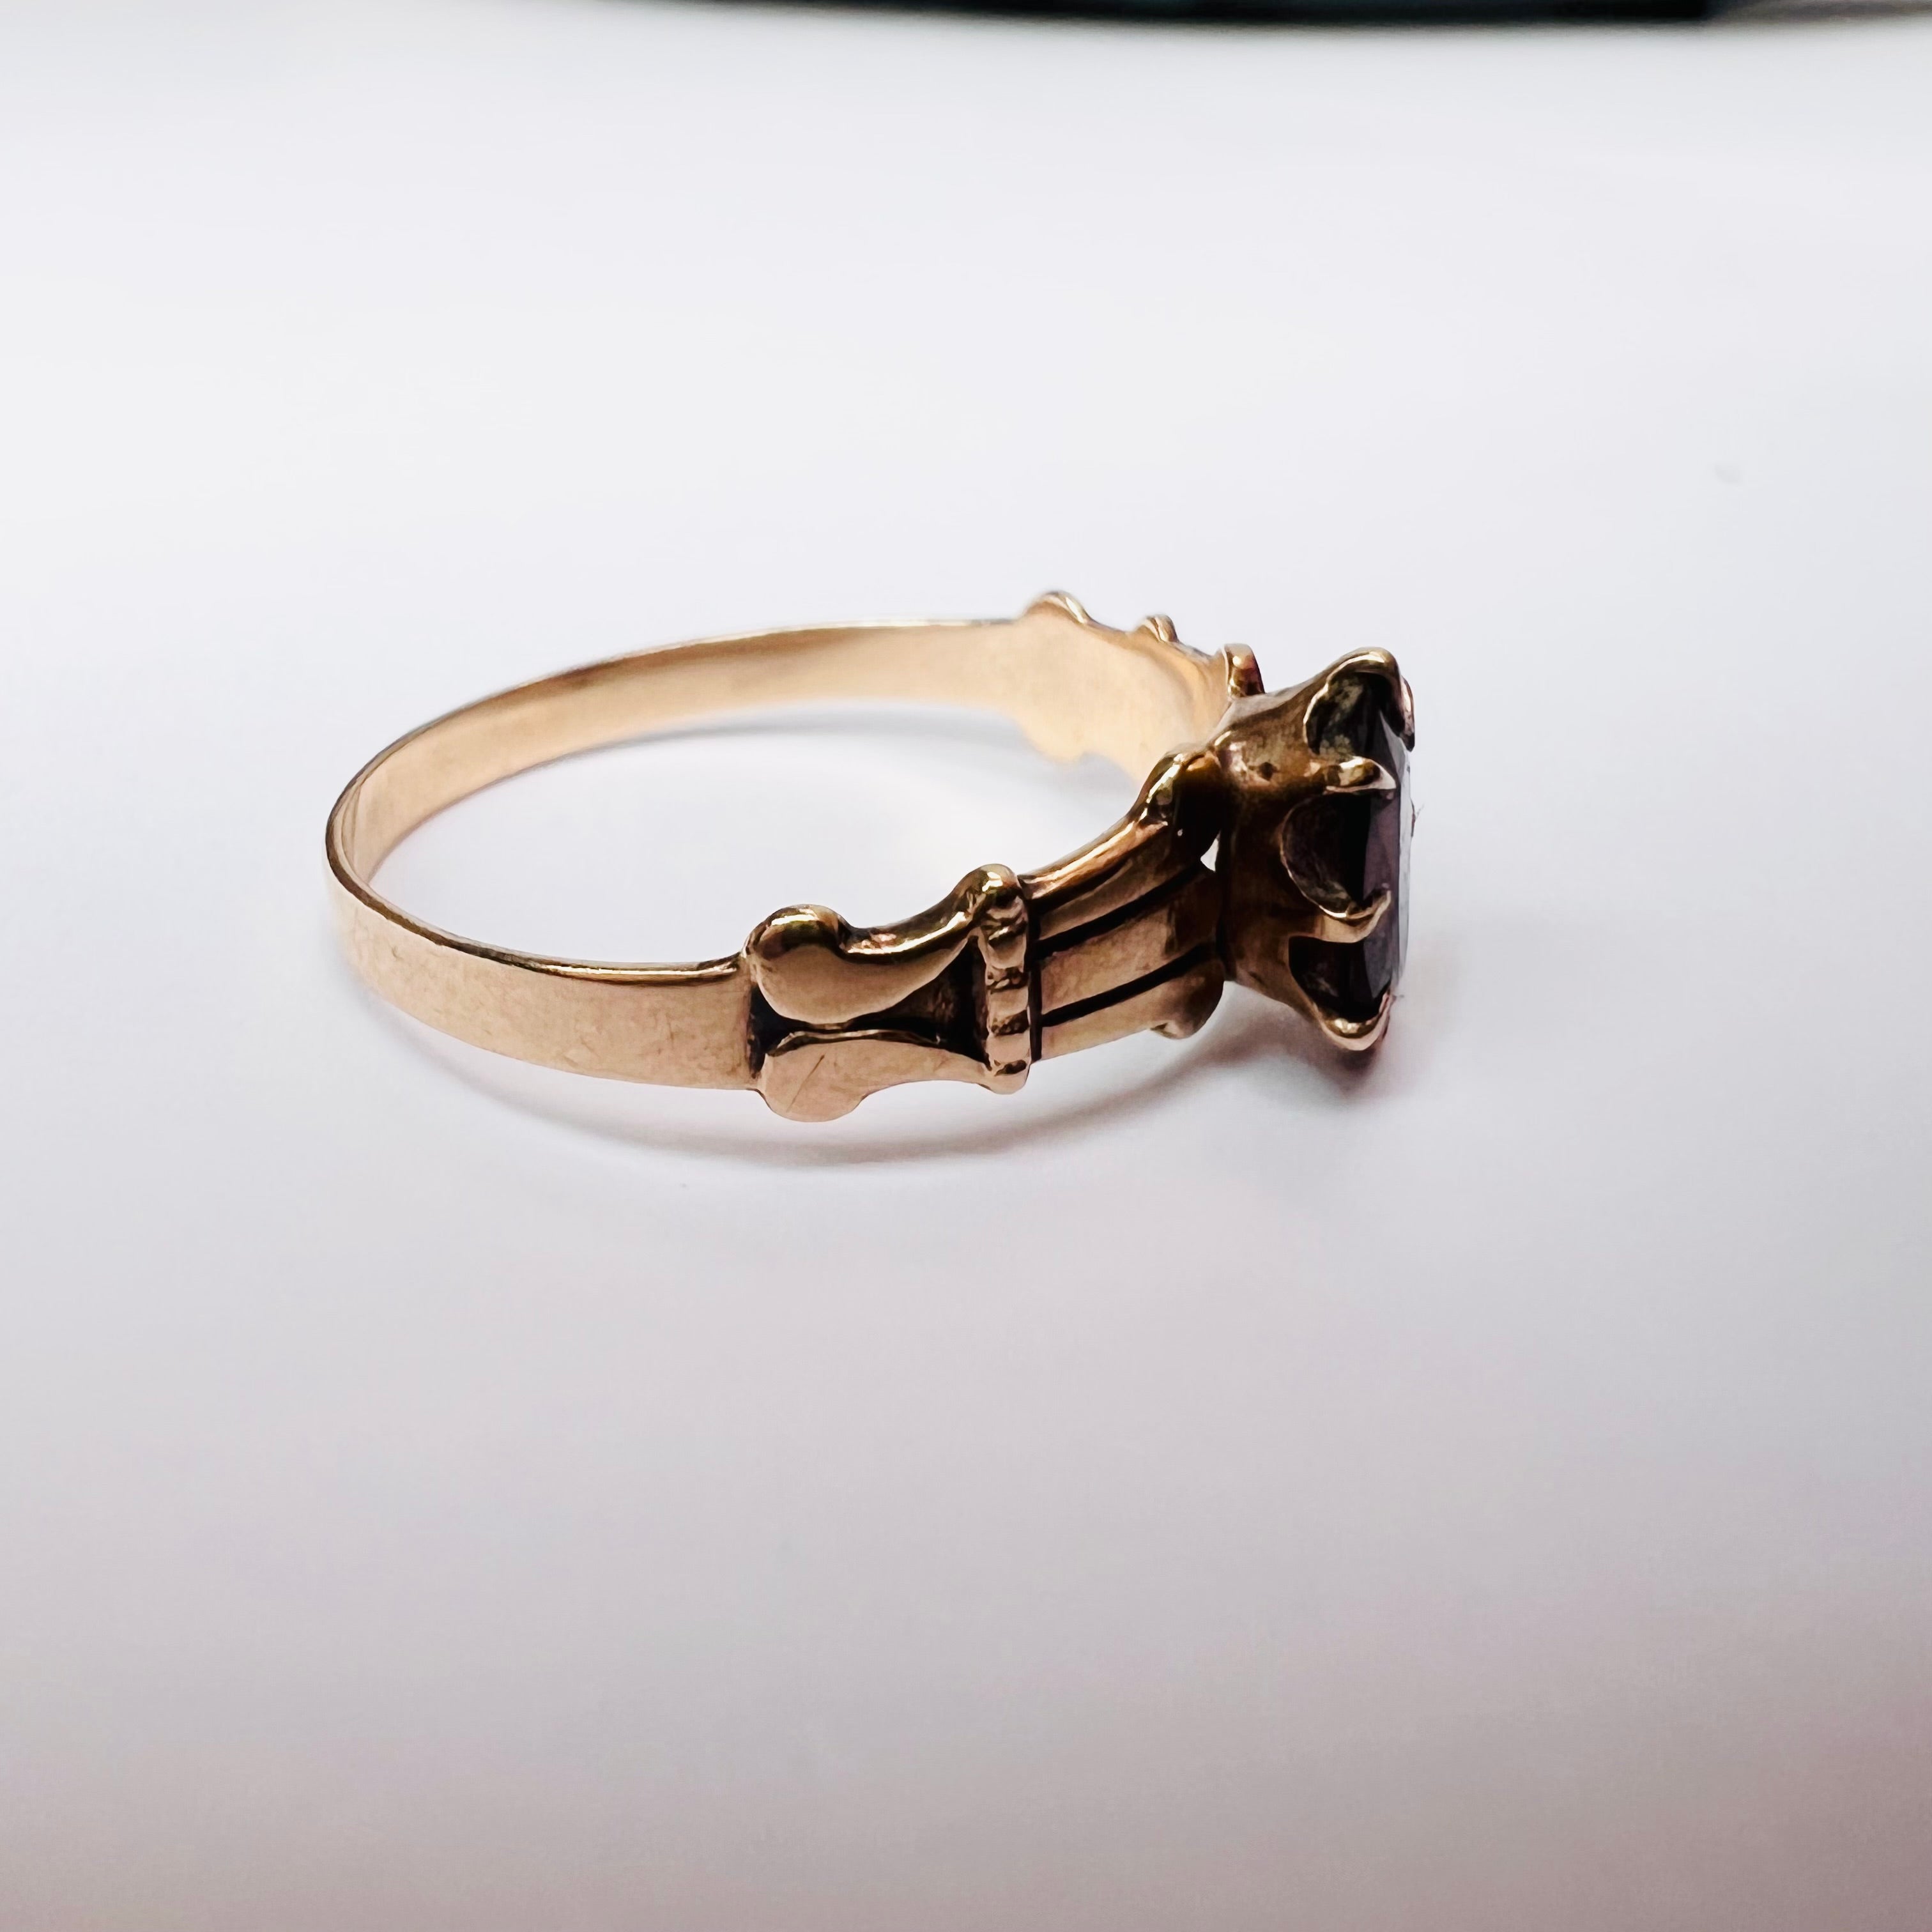 Antique 14K Rose Gold Oval Garnet Engraved Band Ring Size 6.25